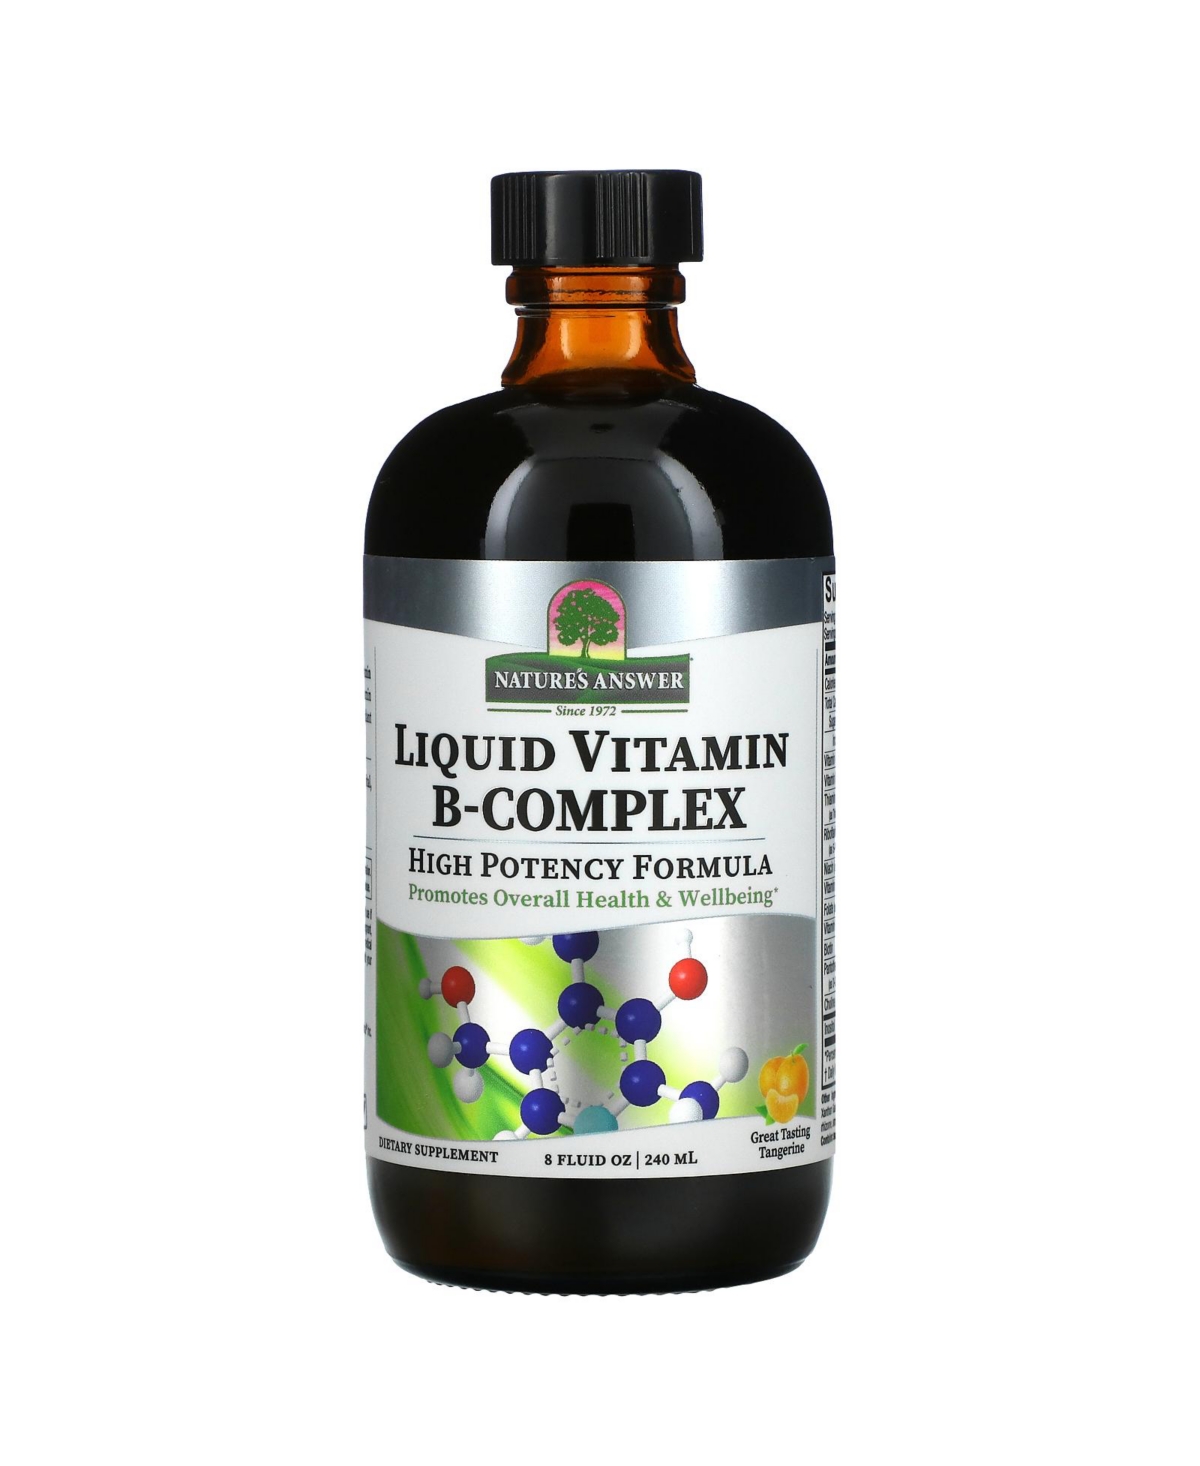 Liquid Vitamin B-Complex Great Tasting Tangerine - 8 fl oz (240 ml) - Assorted Pre-Pack